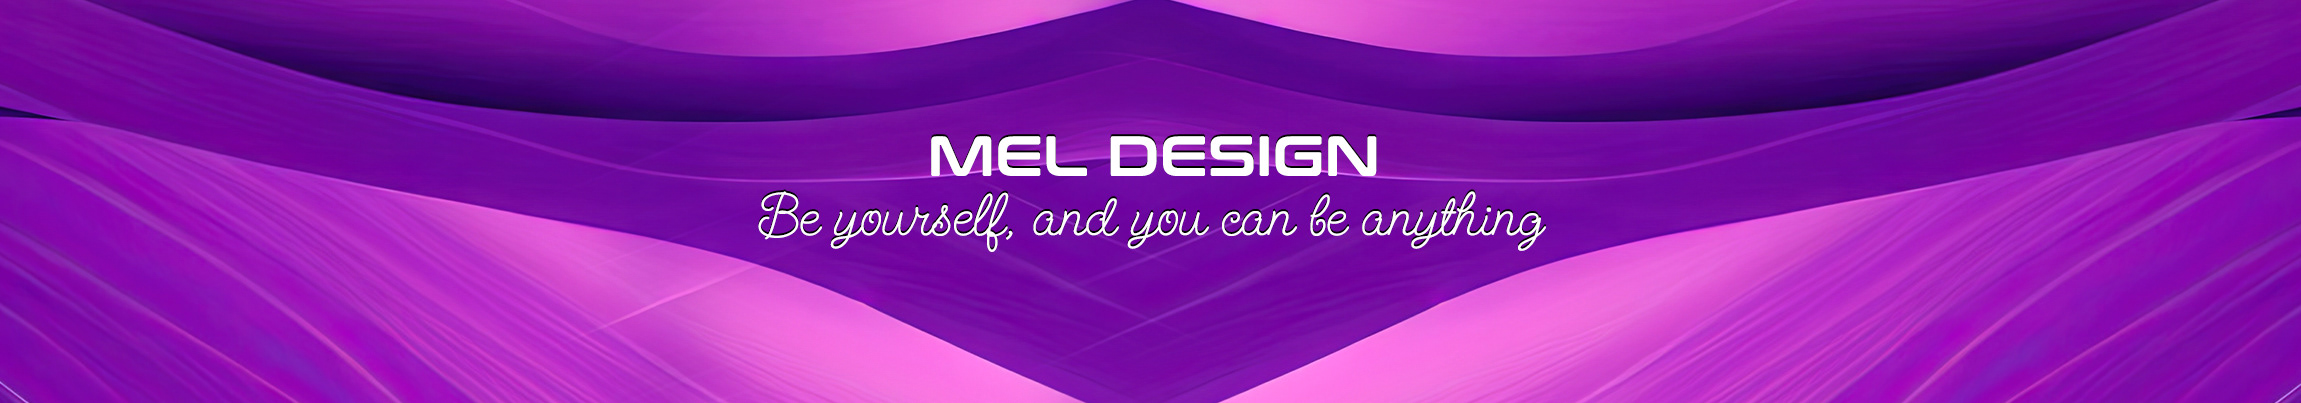 Mel Design profil başlığı